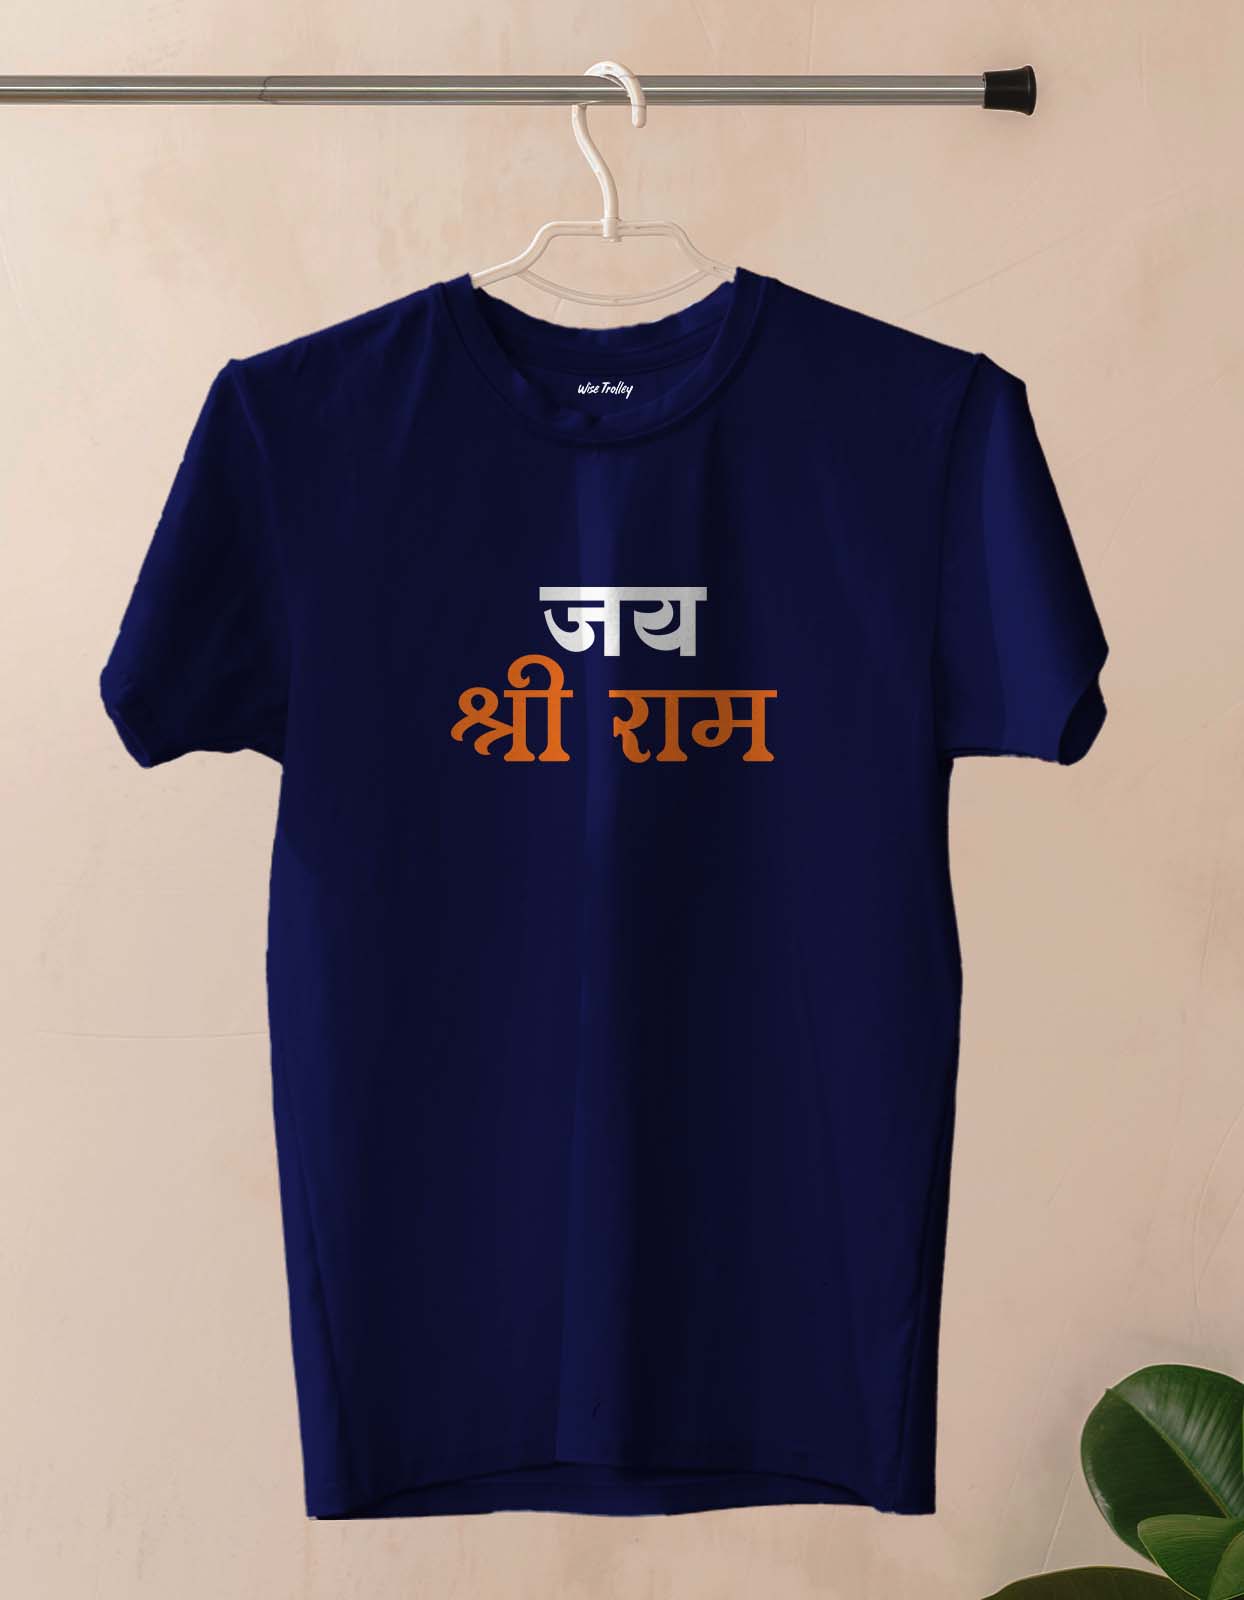 Jai Shree Ram T shirt